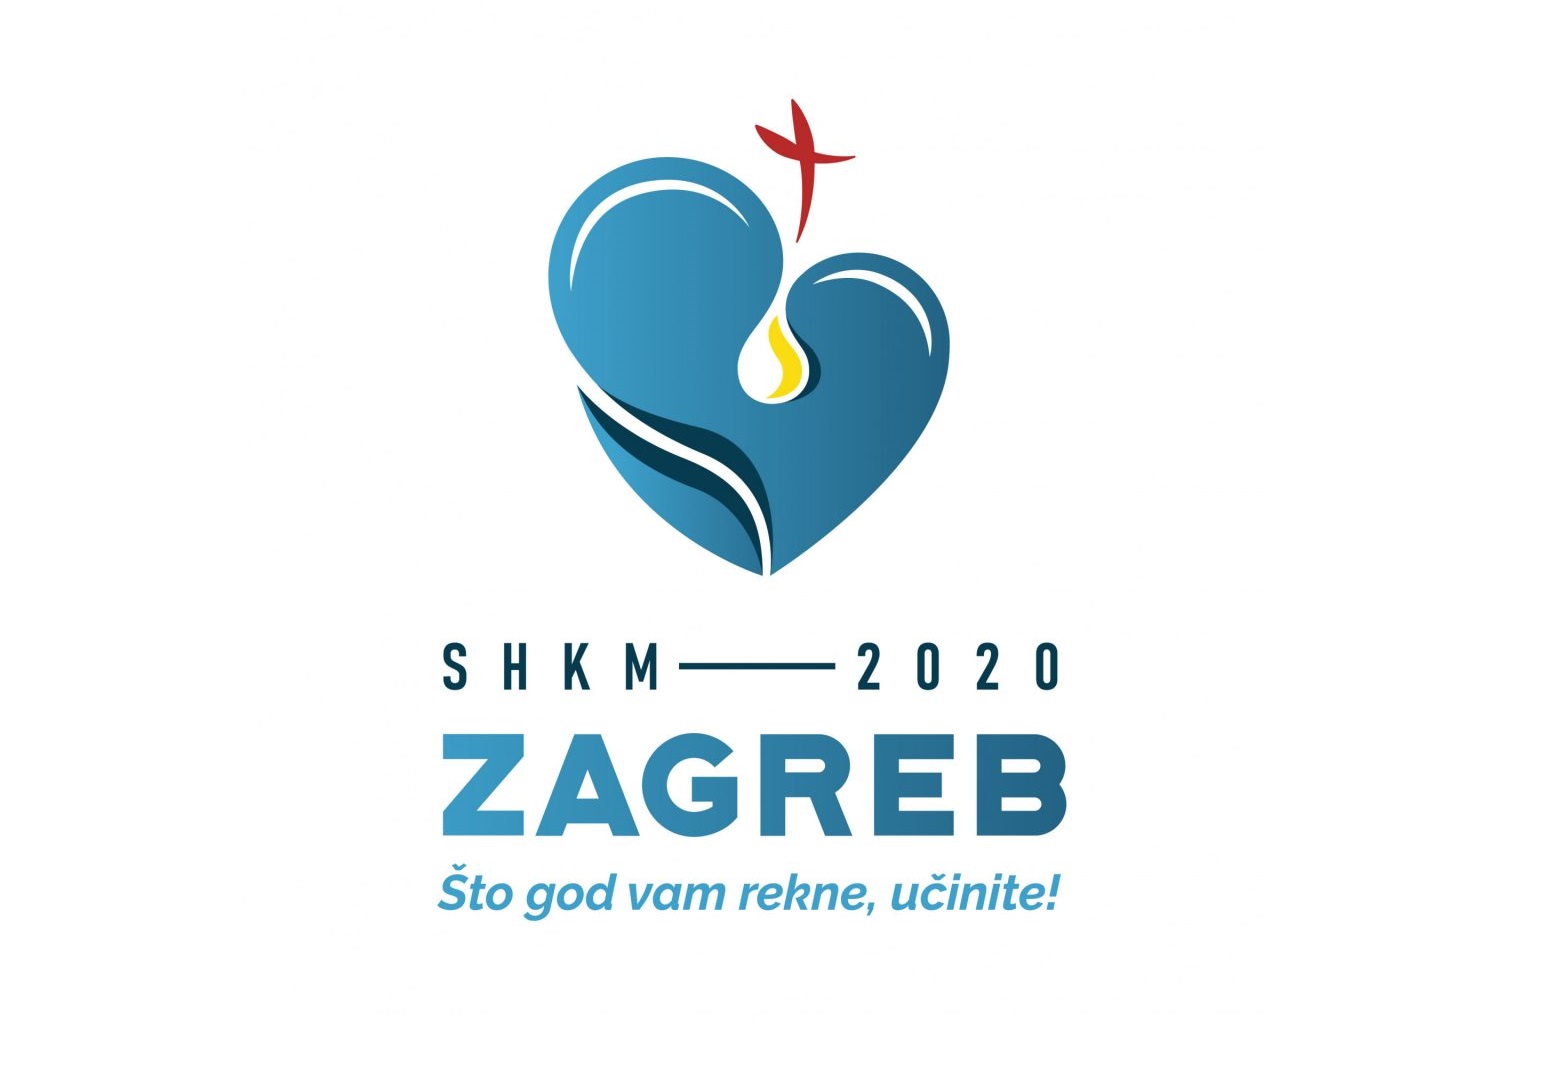 Poziv na volontiranje na Susretu hrvatske katoličke mladeži u Zagrebu